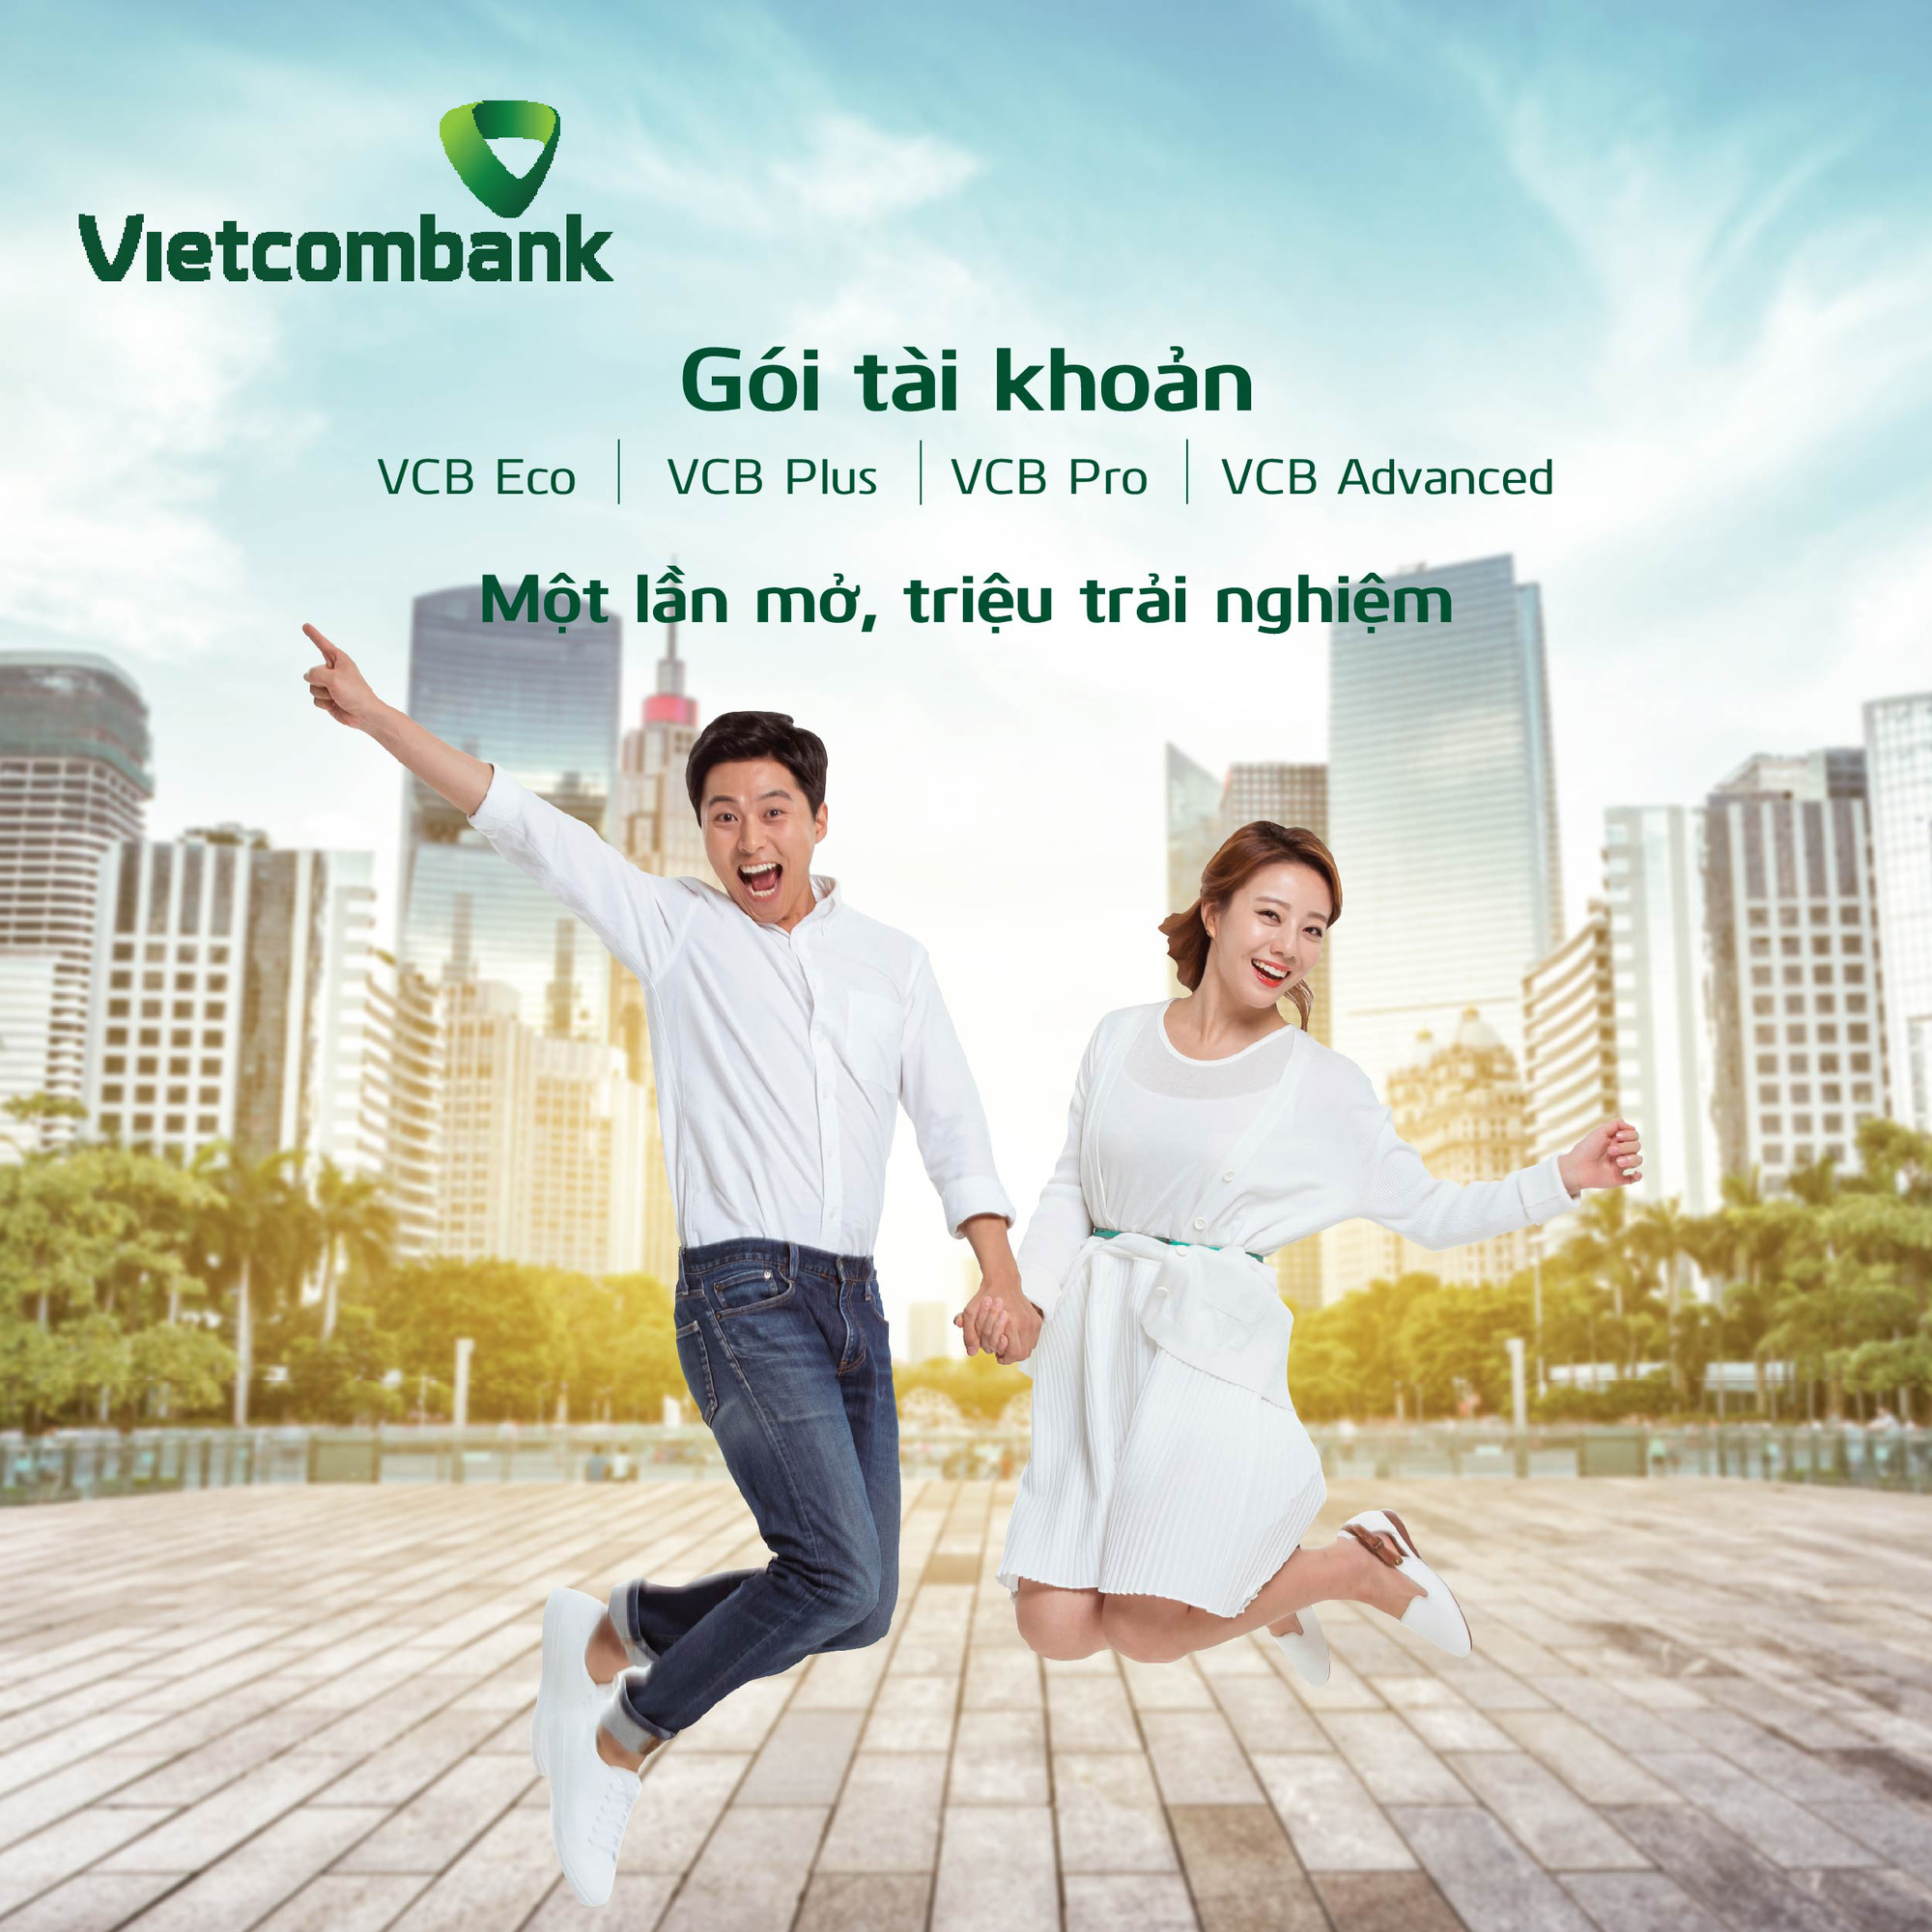 Vietcombank mang đến cho khách hàng nhiều gói tiết kiệm khác nhau, tạo nên sự thuận tiện và hấp dẫn